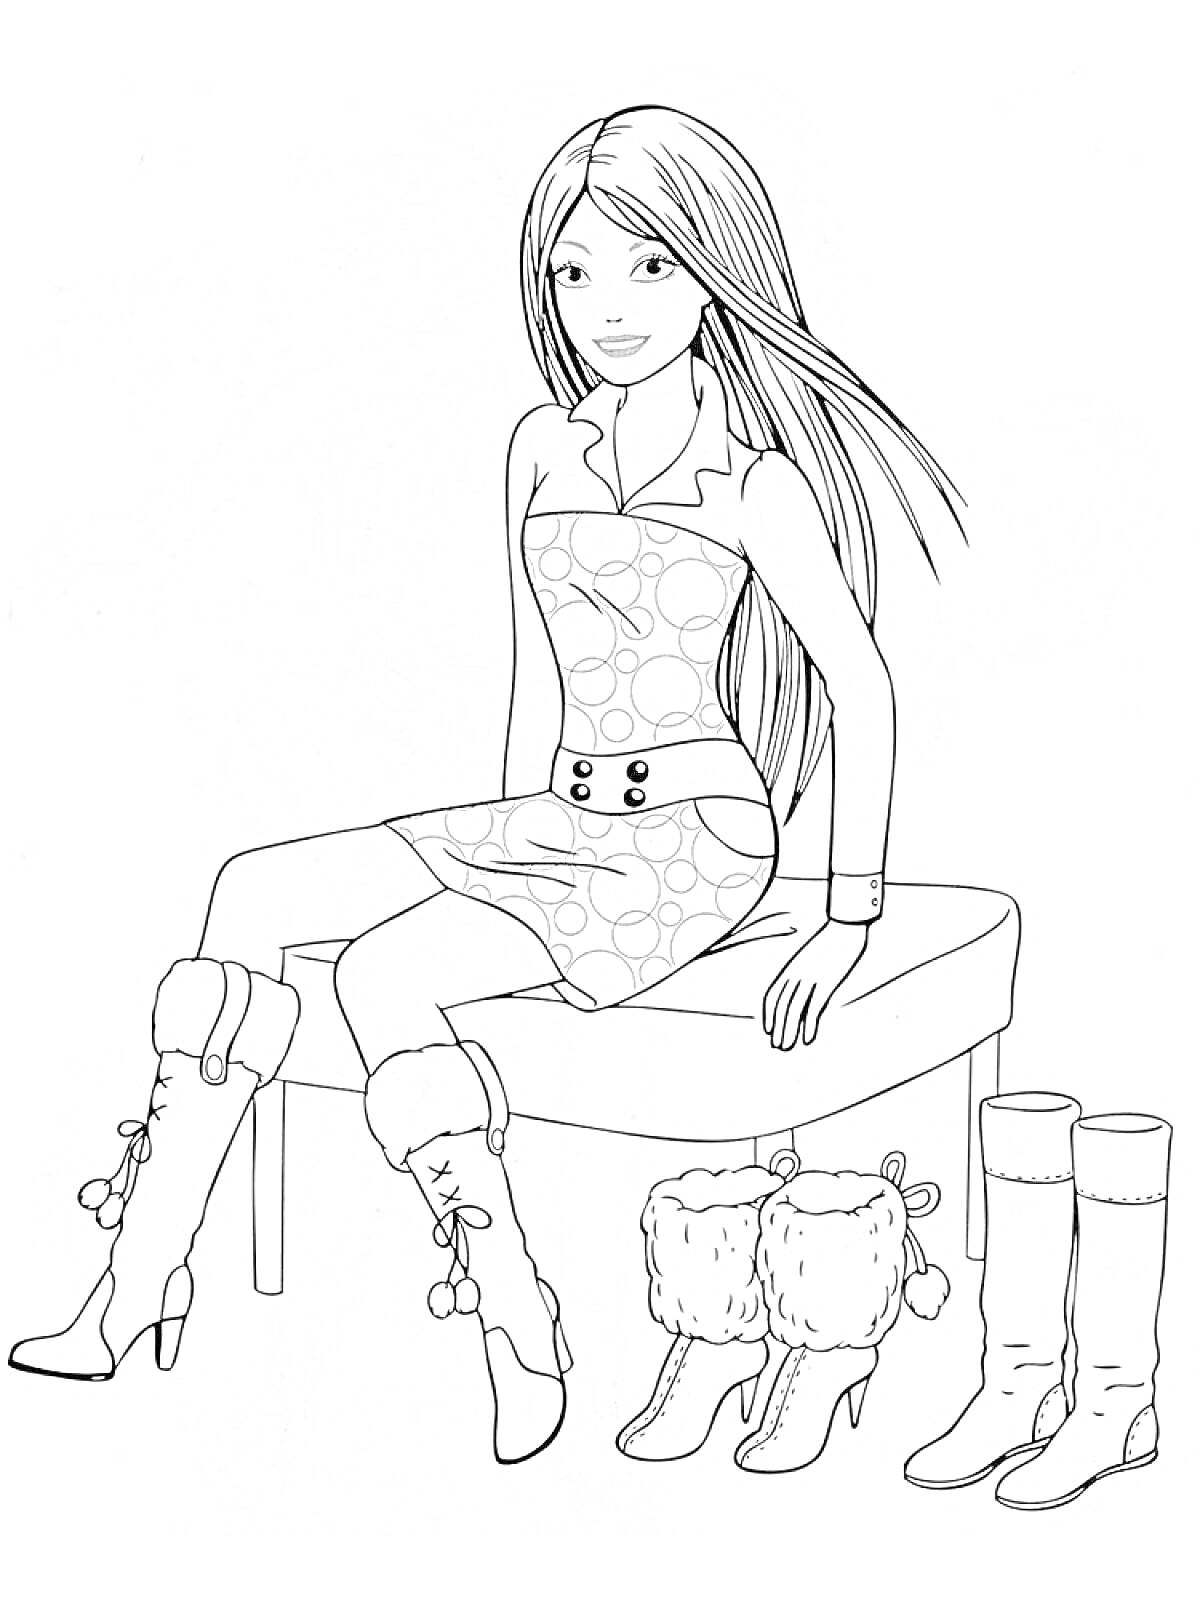 Раскраска Девушка в платье сидит на стуле с длинными волосами, рядом три пары сапог